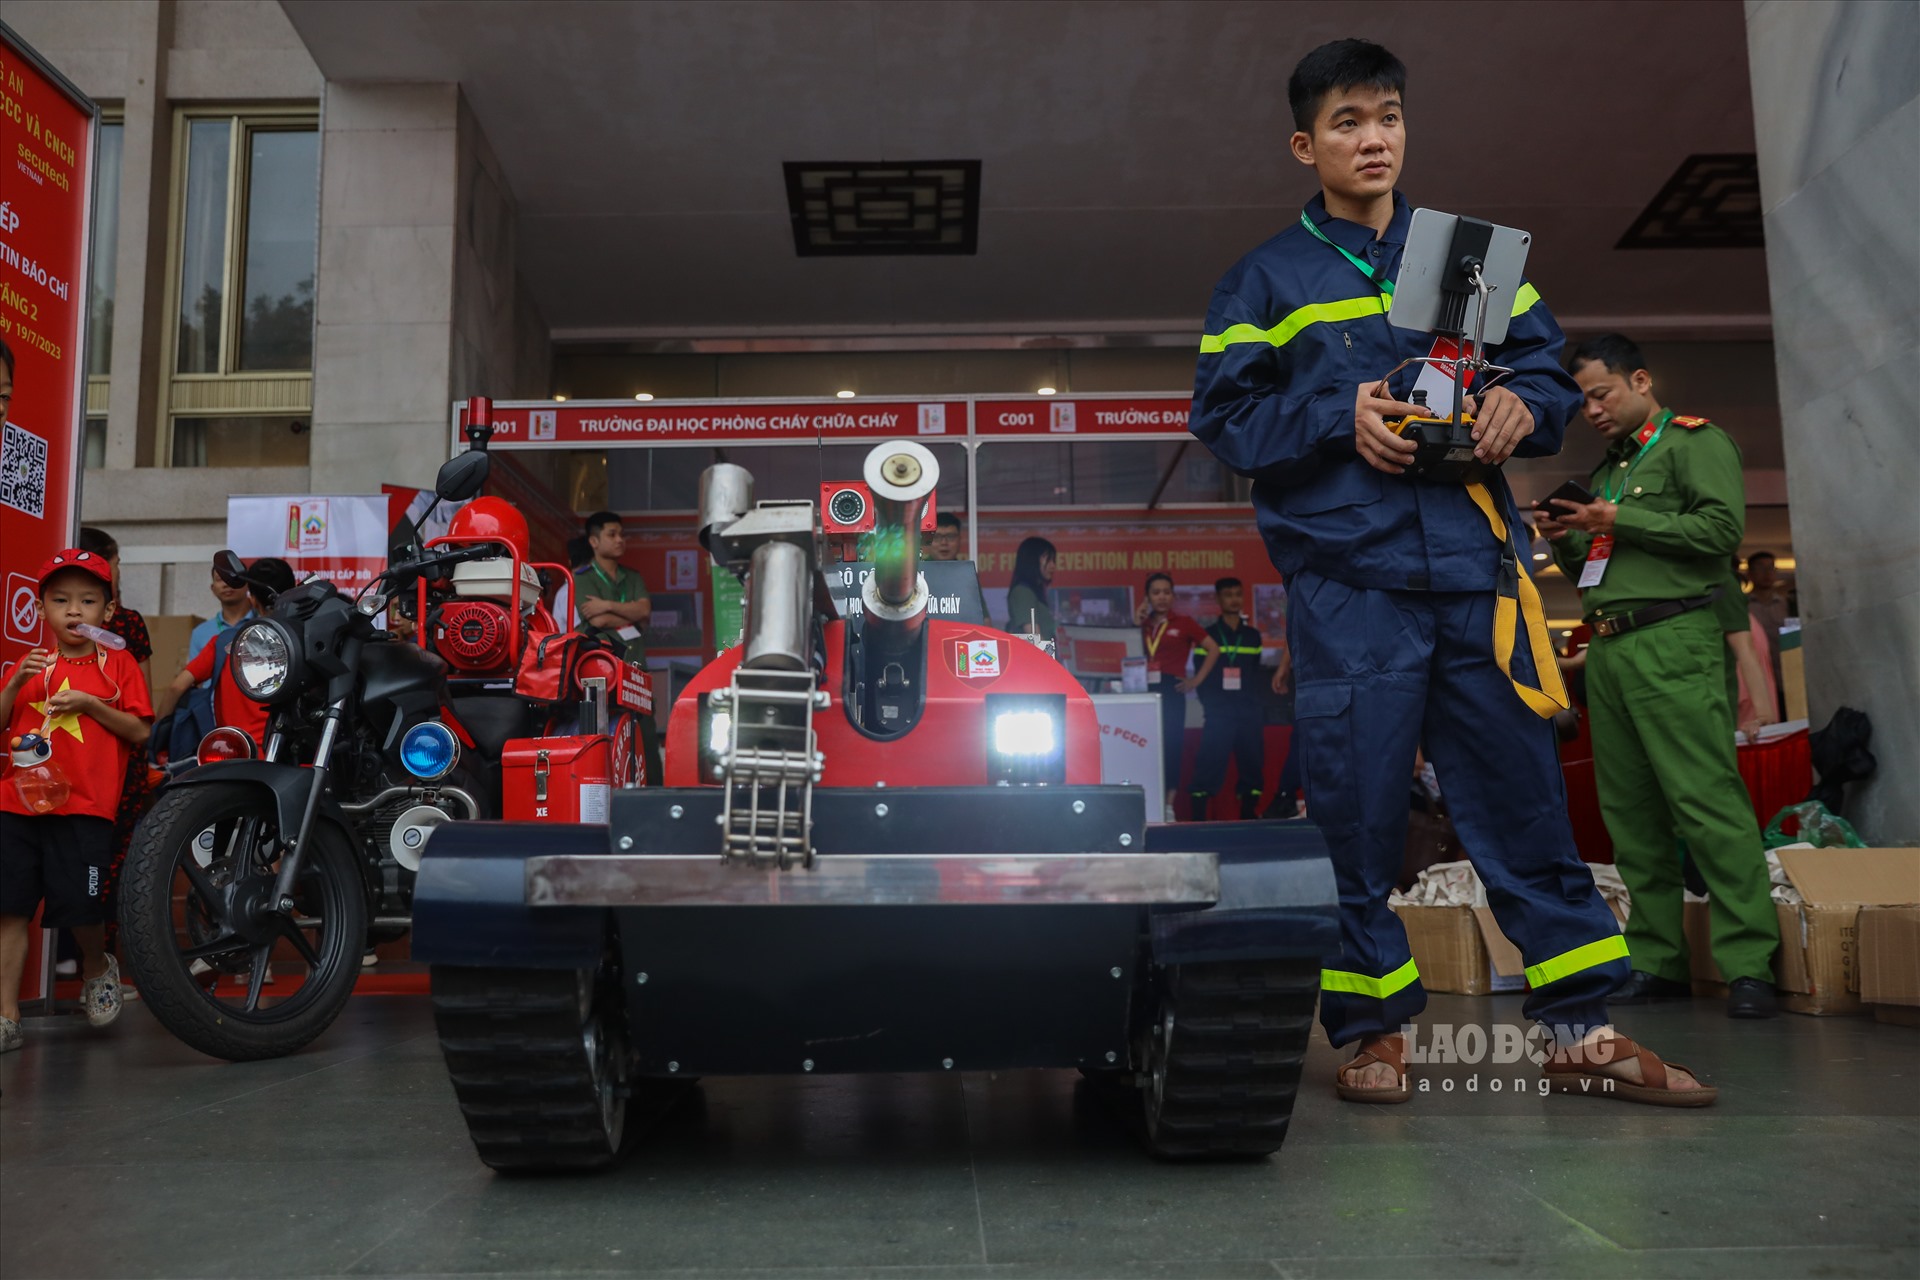 Robot trong công tác chữa cháy được thiết kế điều khiển từ xa và có thể vượt mọi địa hình như leo cầu thang. 